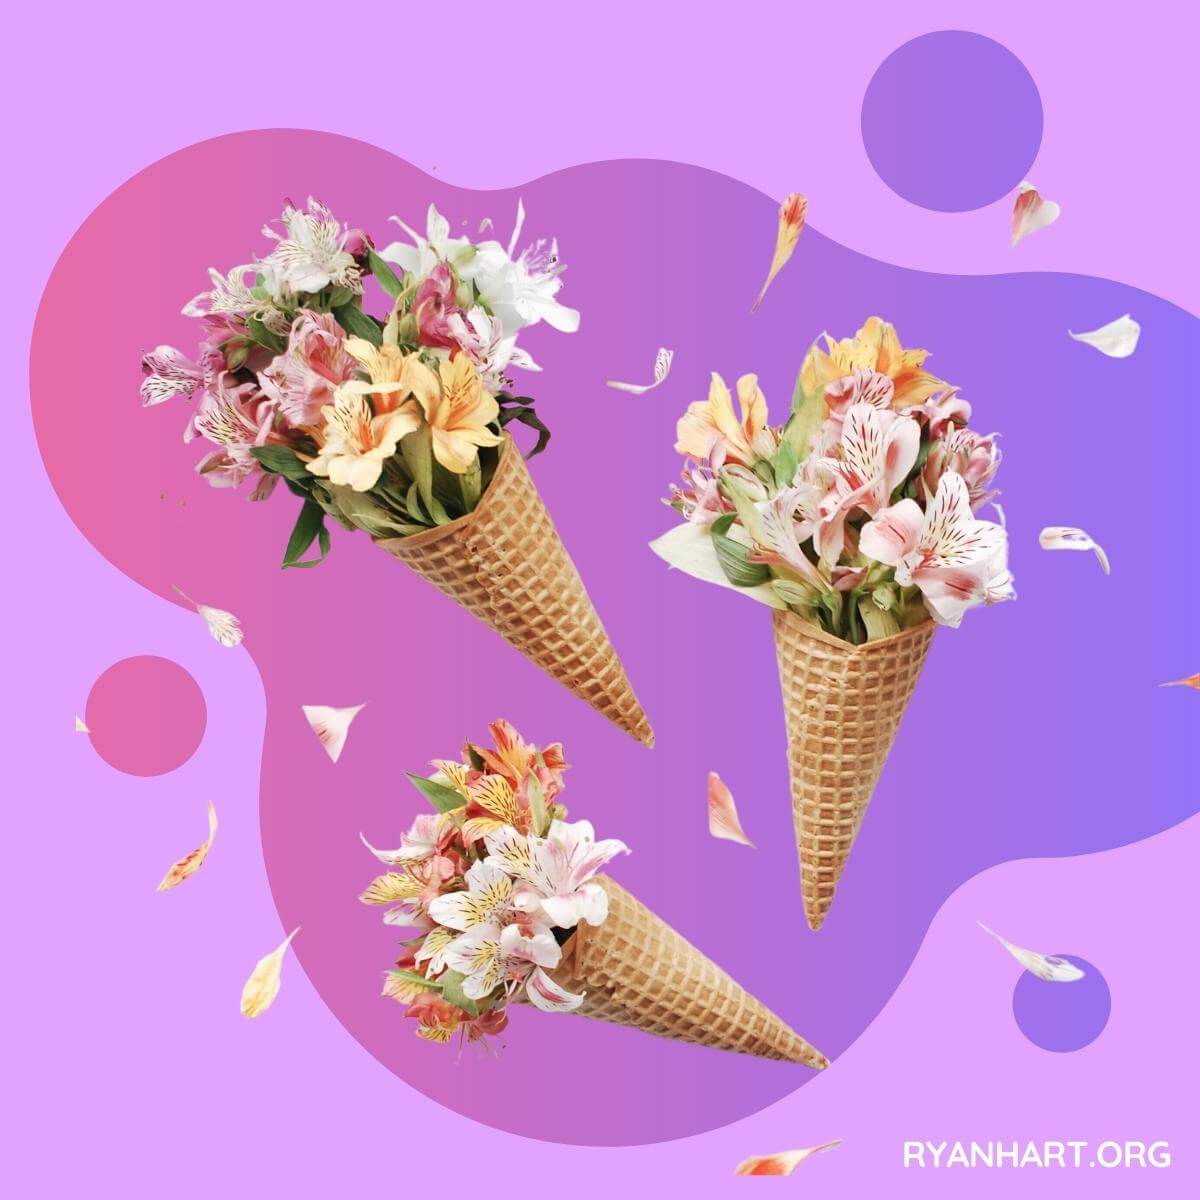 Flowers Arranged in Ice Cream Cones